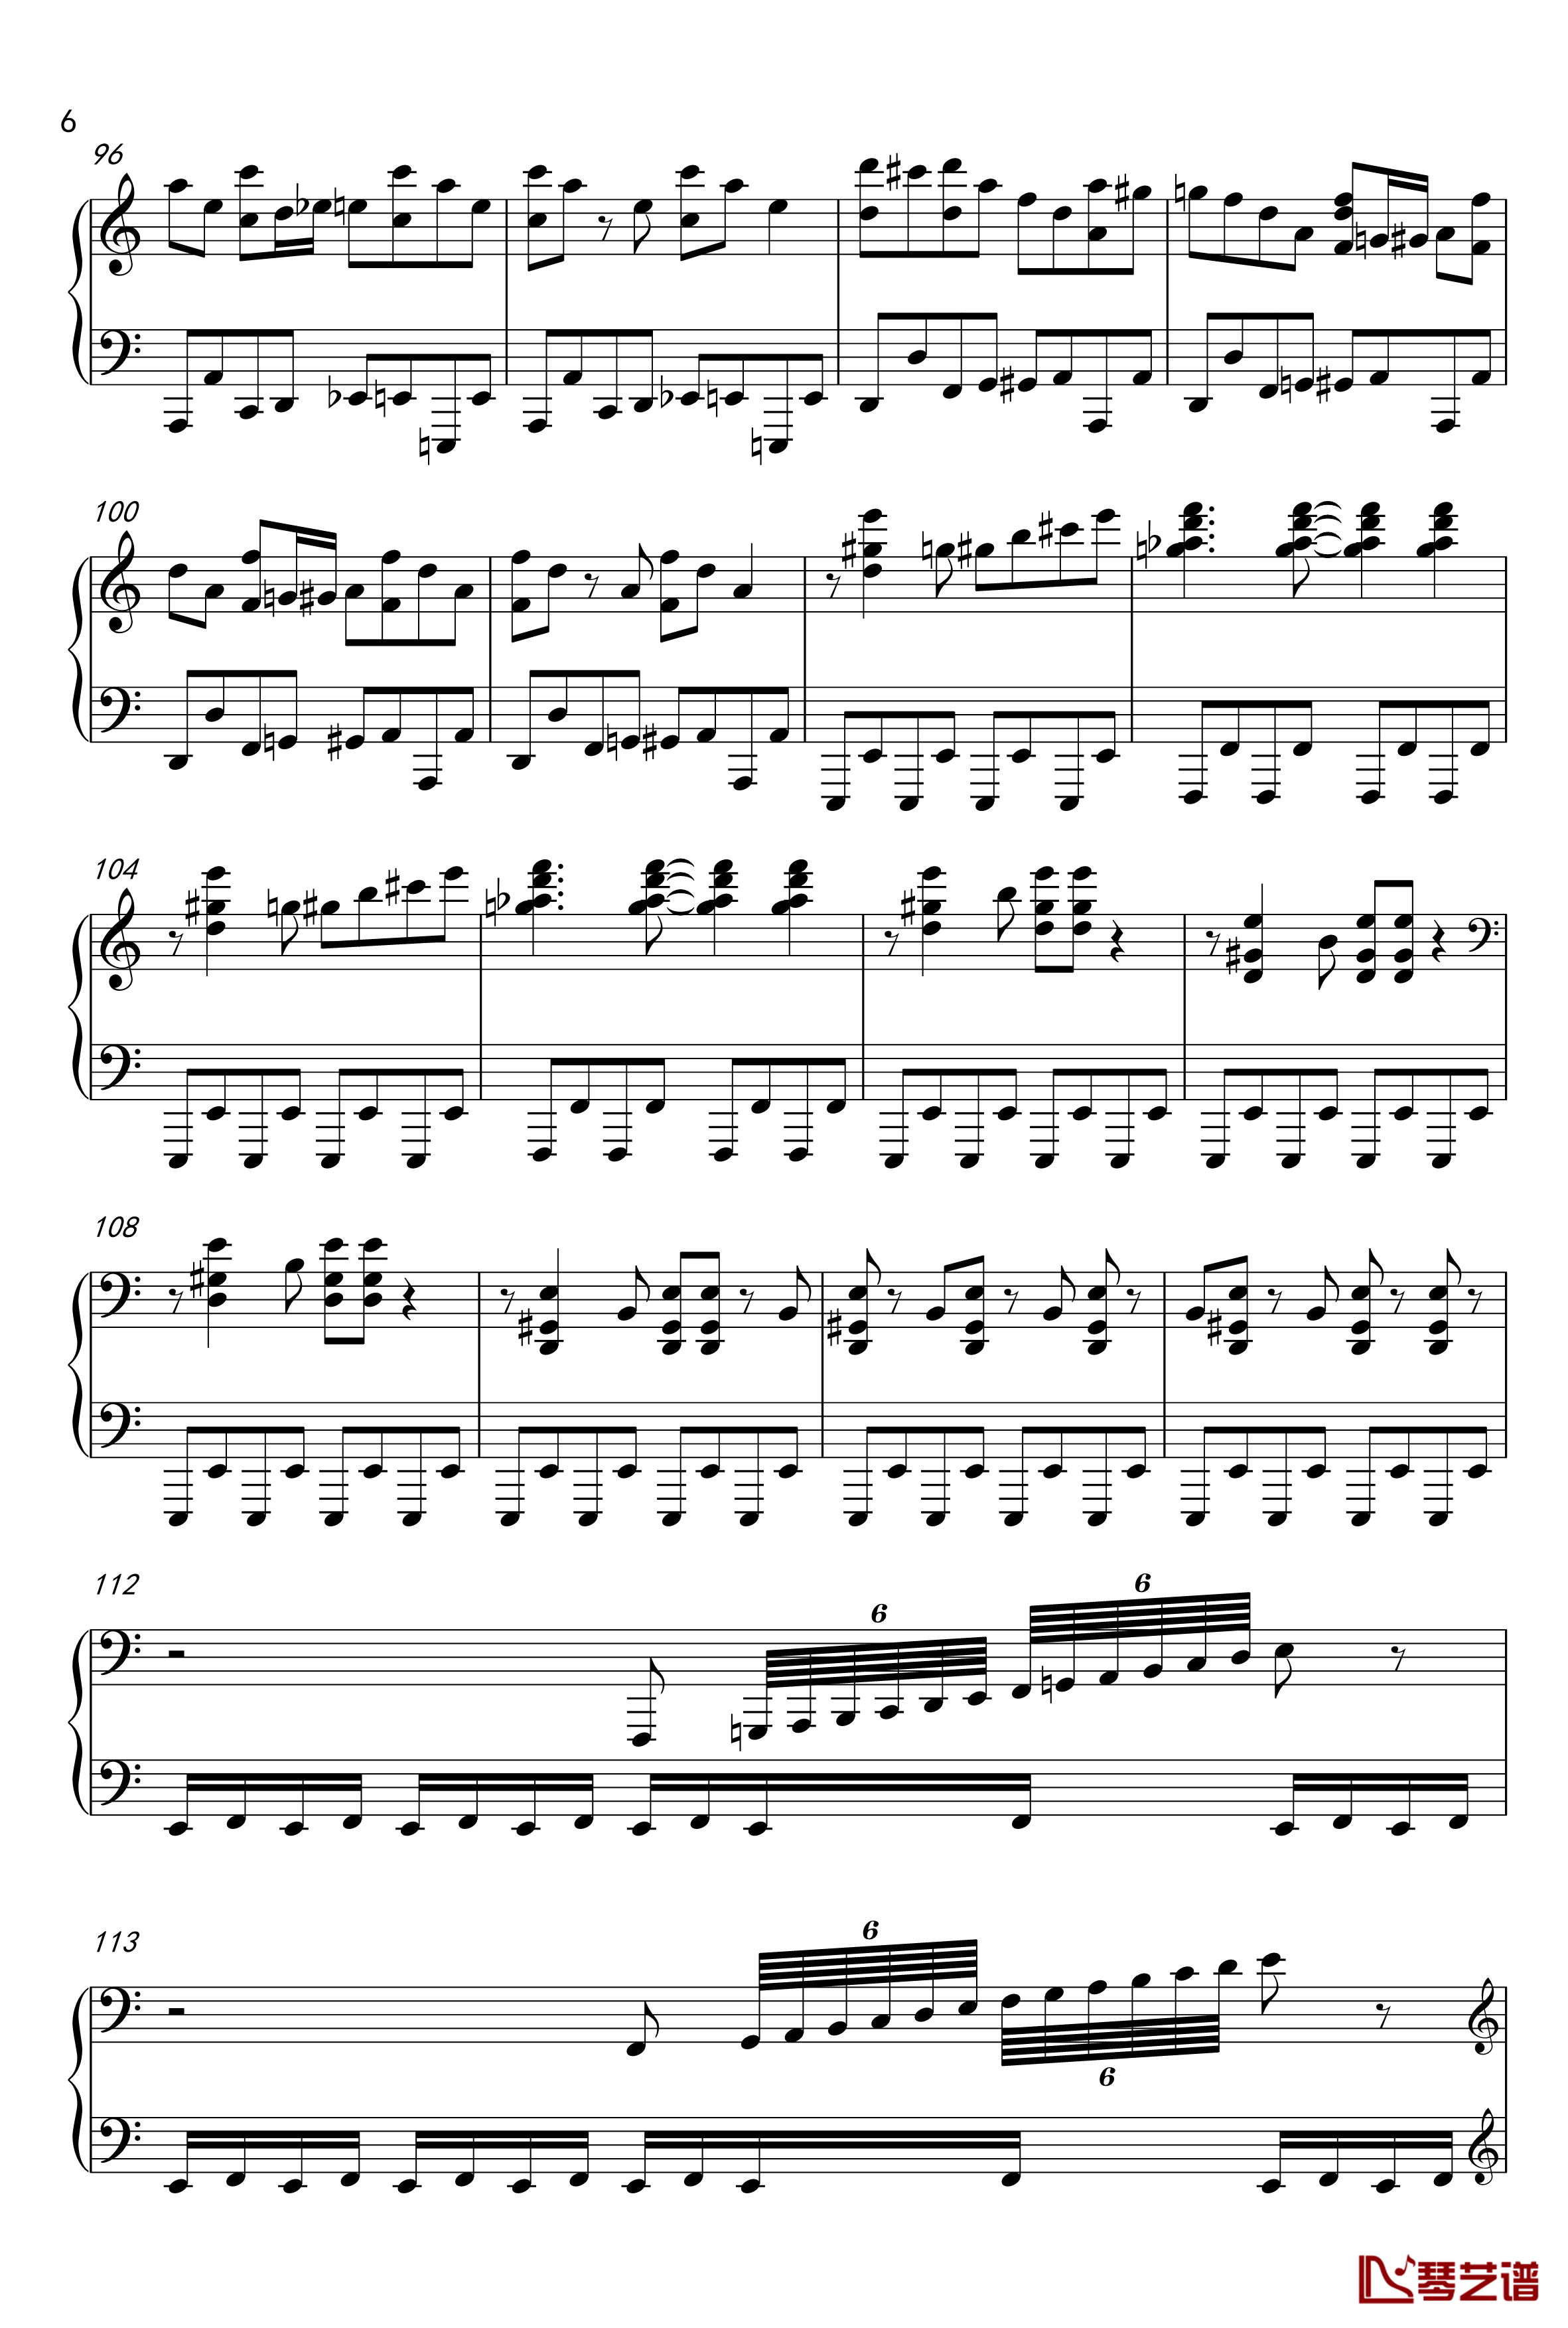 布吉乌吉野蜂飞舞钢琴谱爵士版 -里姆斯基-柯萨科夫6